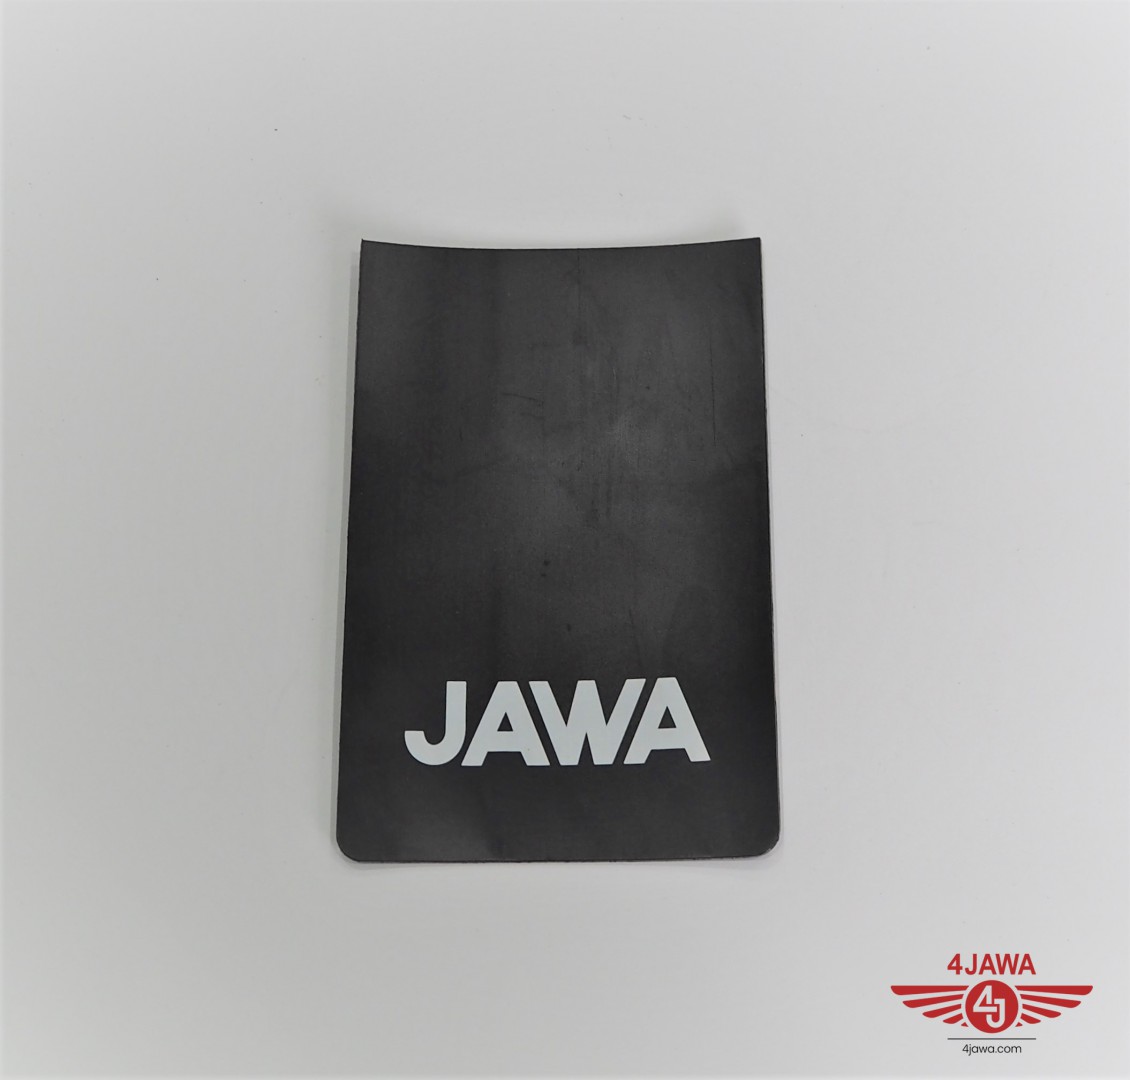 Spritzschutz logo  JAWA 4Jawa  com